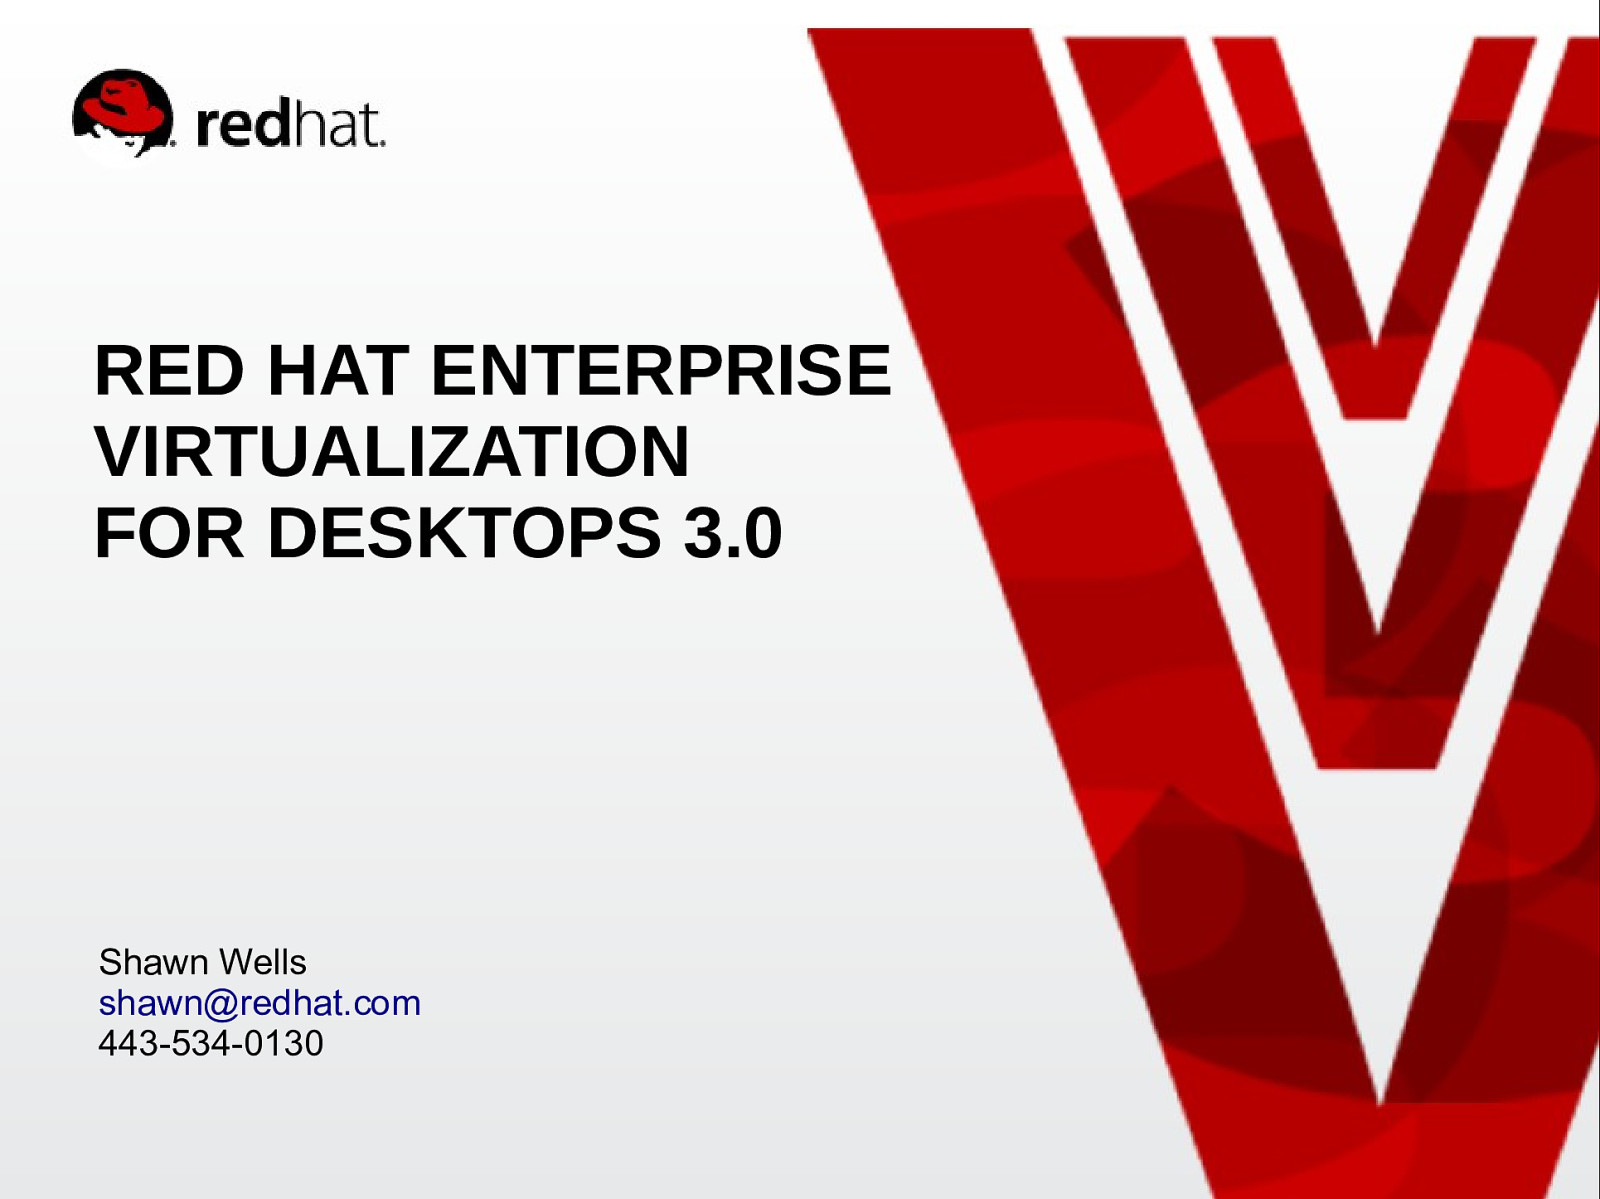 Red Hat Enterprise Virtualization for Desktops 3.0